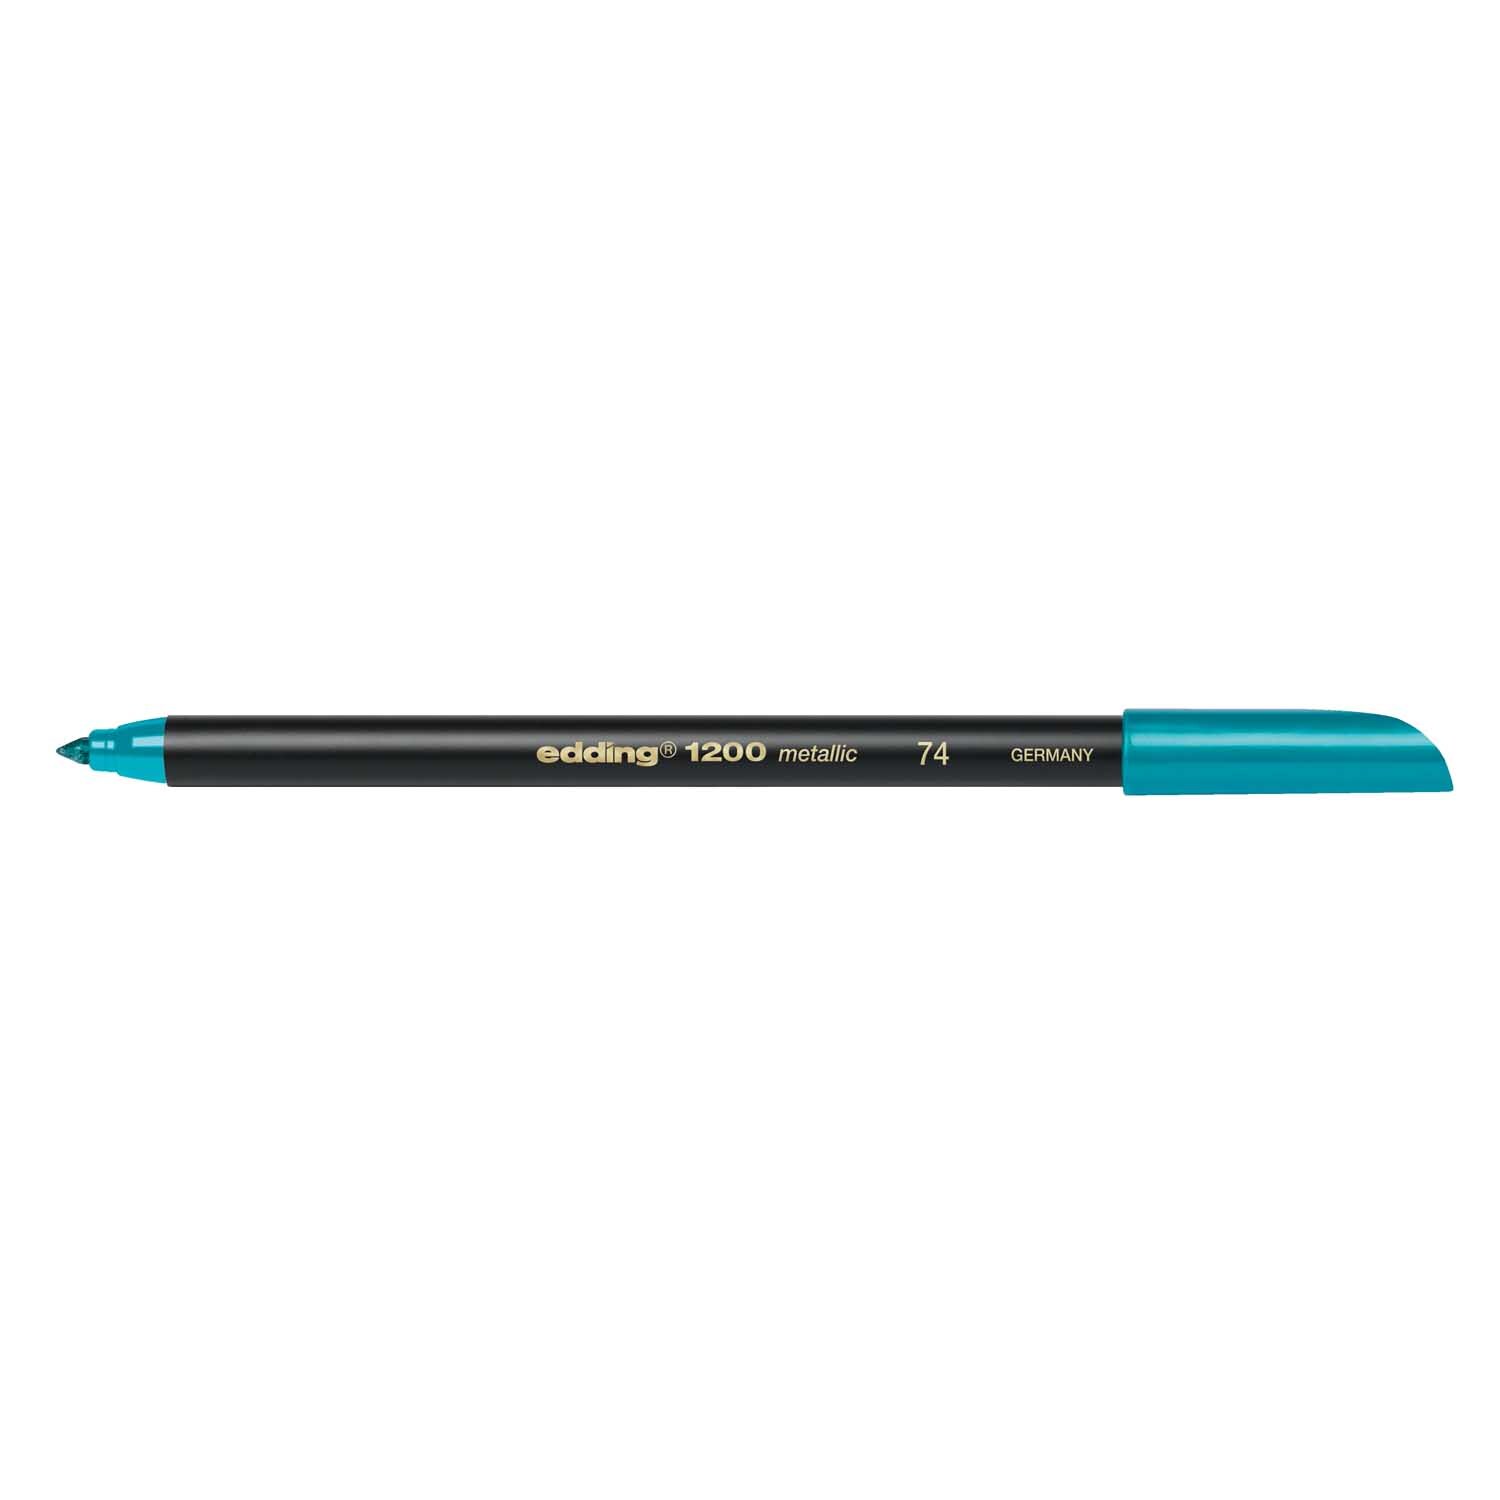 1200 metallic colour pen